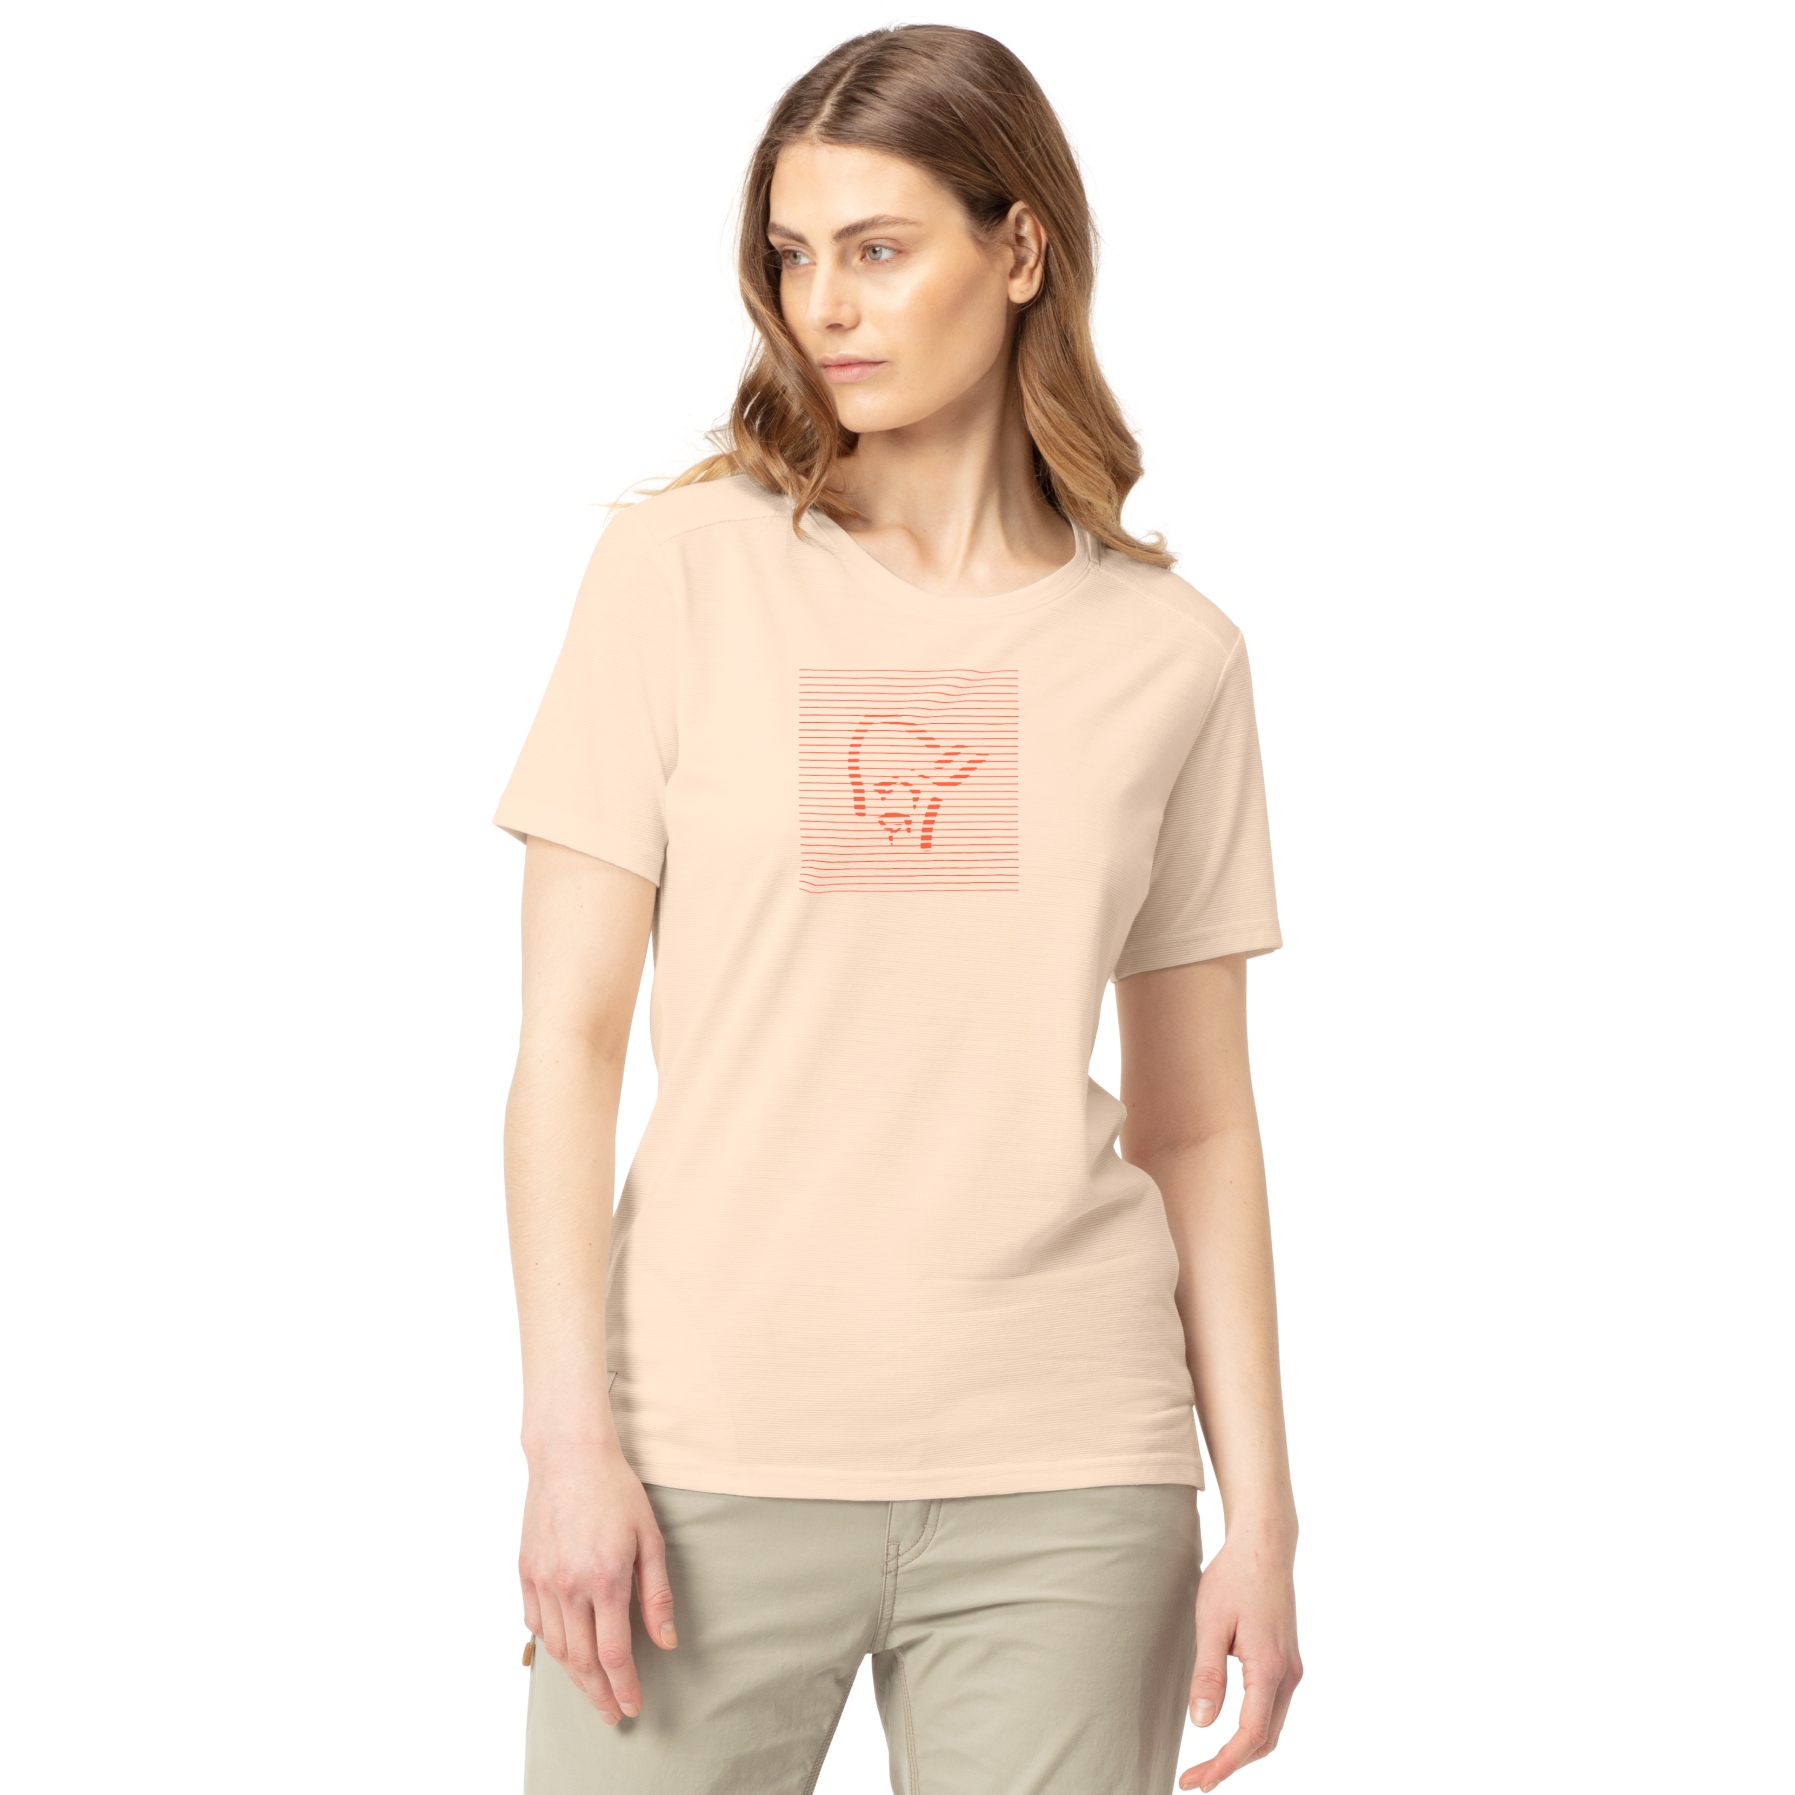 Produktbild von Norrona svalbard wool T-Shirt Damen - Snowdrop